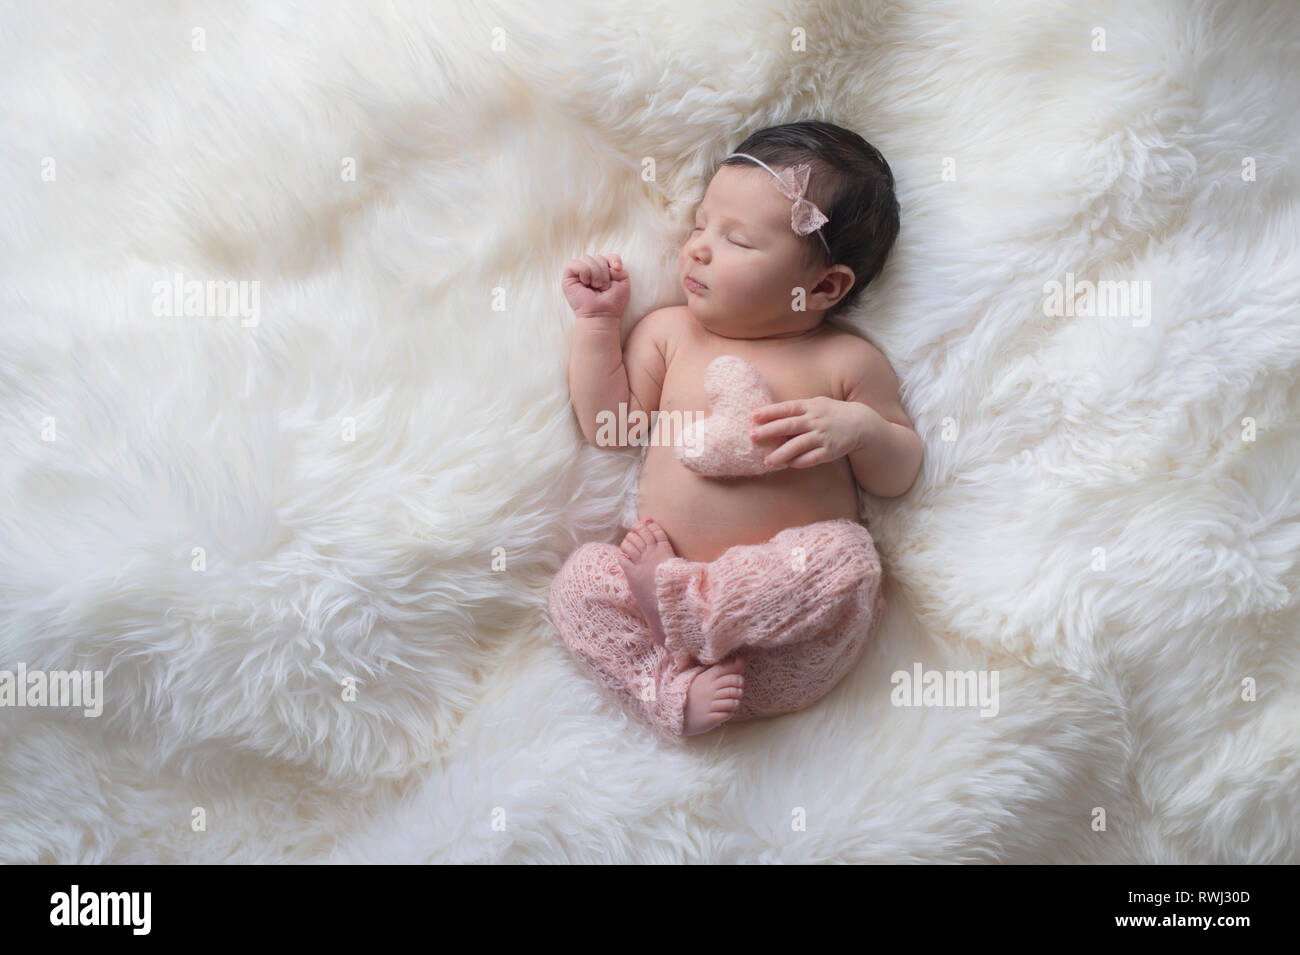 Dormir, semana de edad bebé vestida de luz rosa, tejida de pantalones y sosteniendo un minúsculo, almohada en forma de corazón. Filmado en el estudio sobre un blanco sheepski Foto de stock